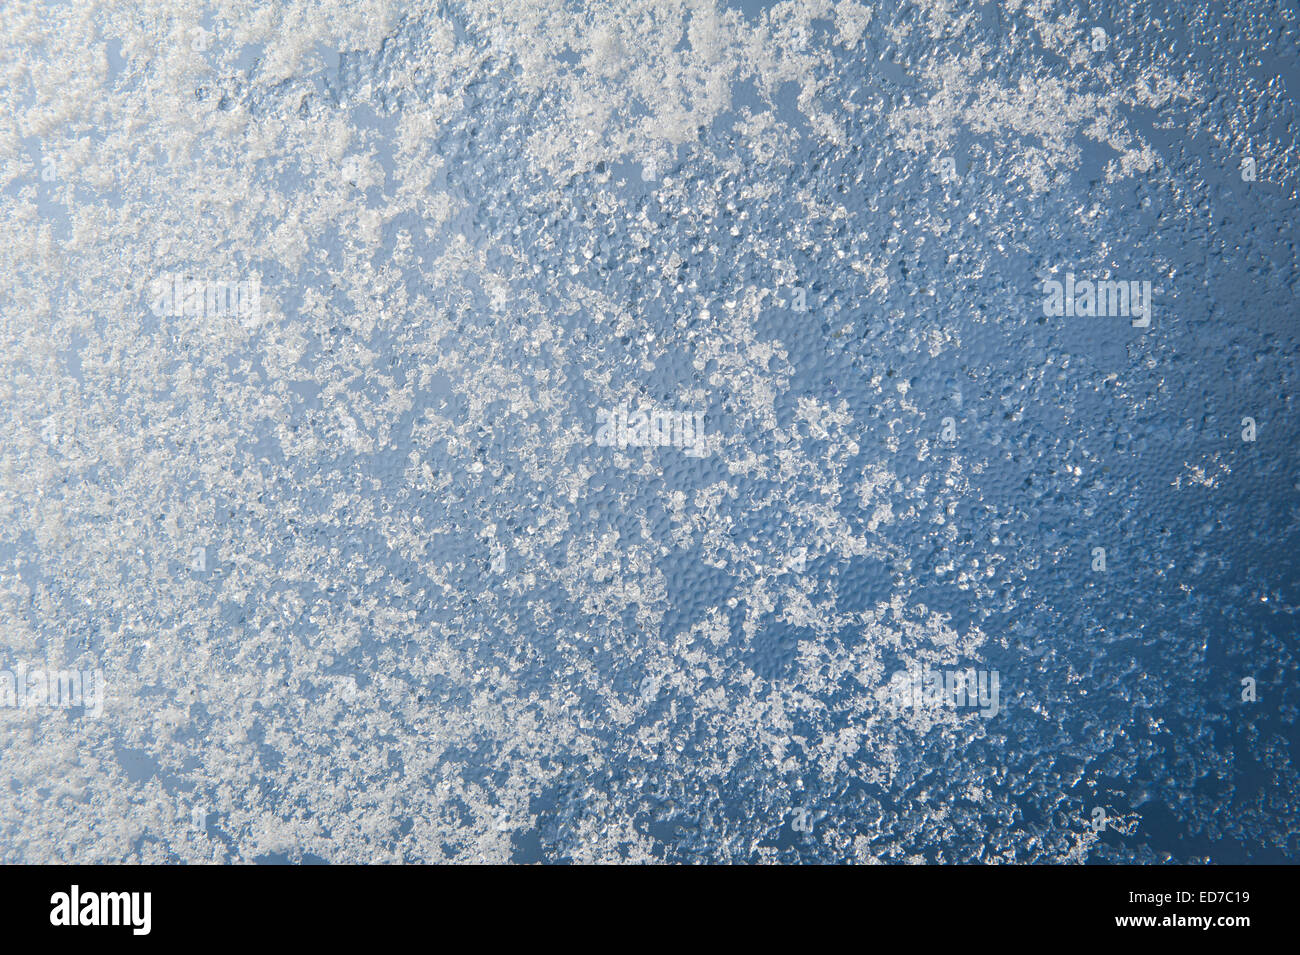 La texture de la neige et de la condensation de l'eau Banque D'Images